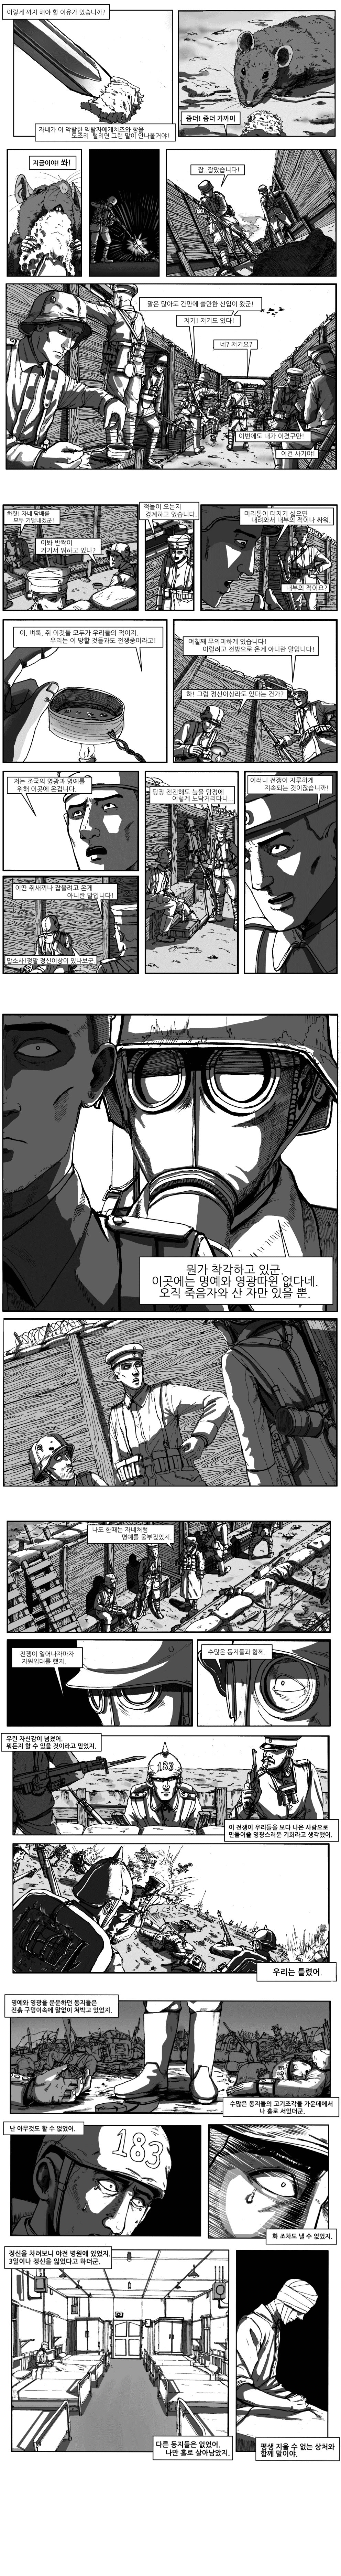 1차 세계대전 참호전 『서부전선 이상없다』.manhwa